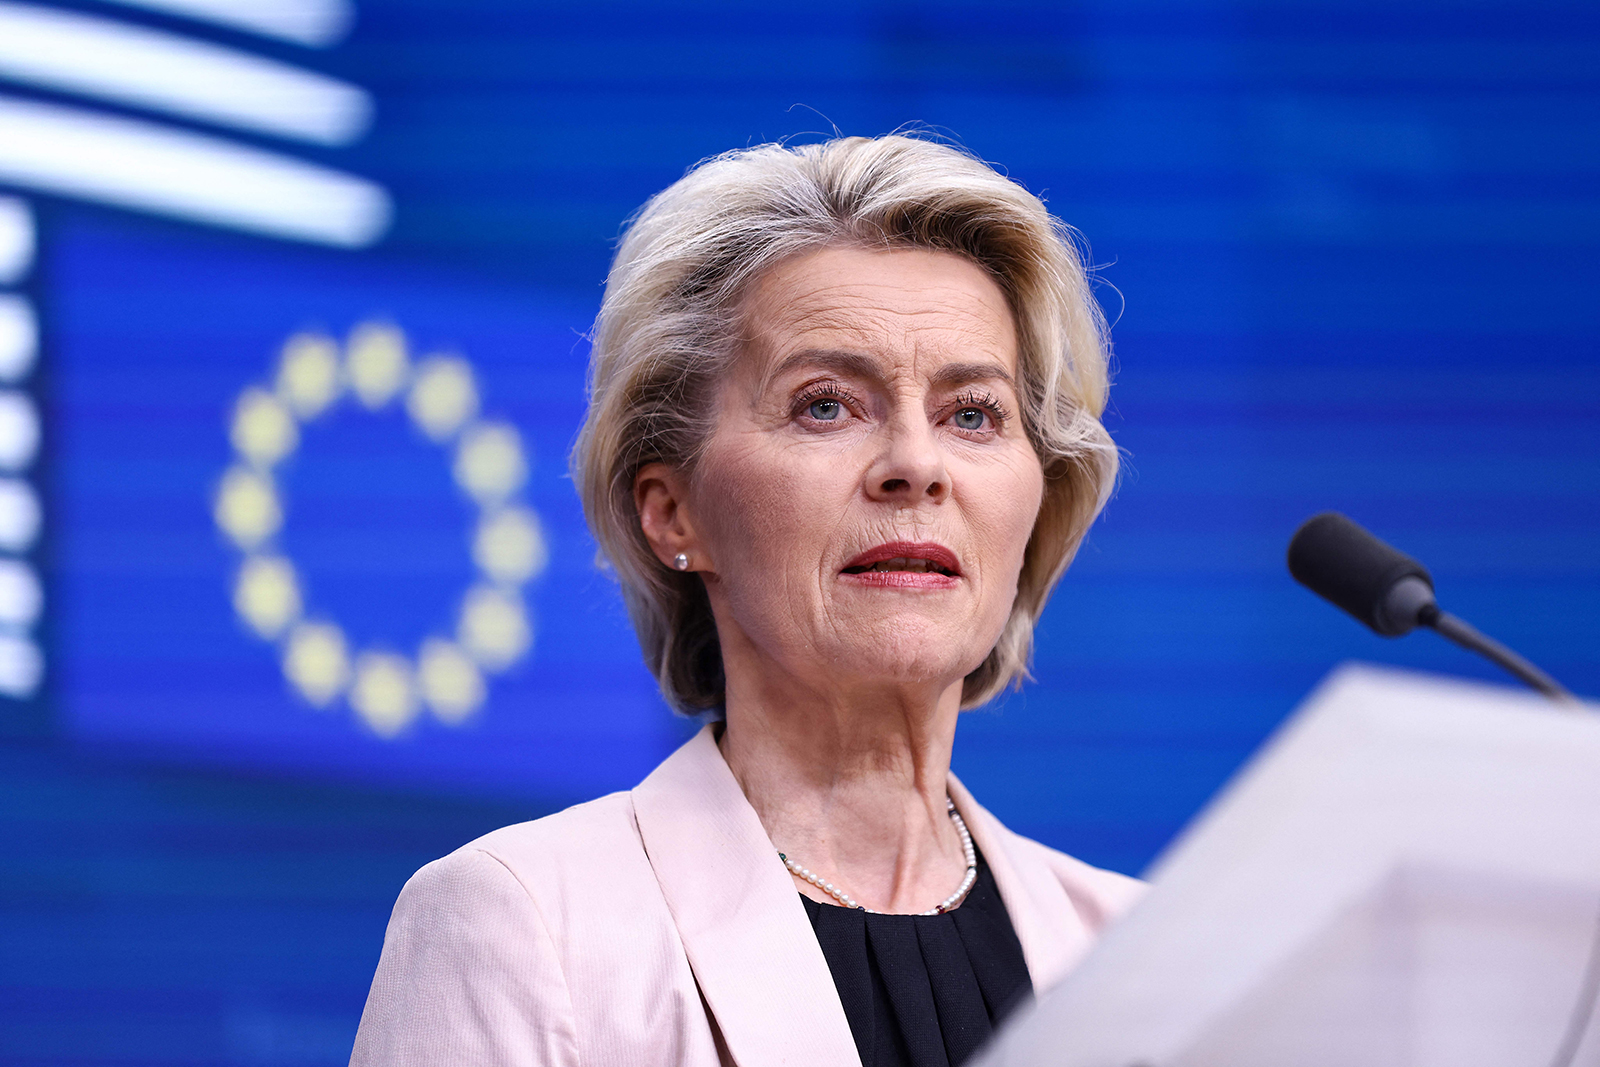 Ursula von der Leyen speaks during the European Union summit at the EU headquarters in Brussels, on October 27.